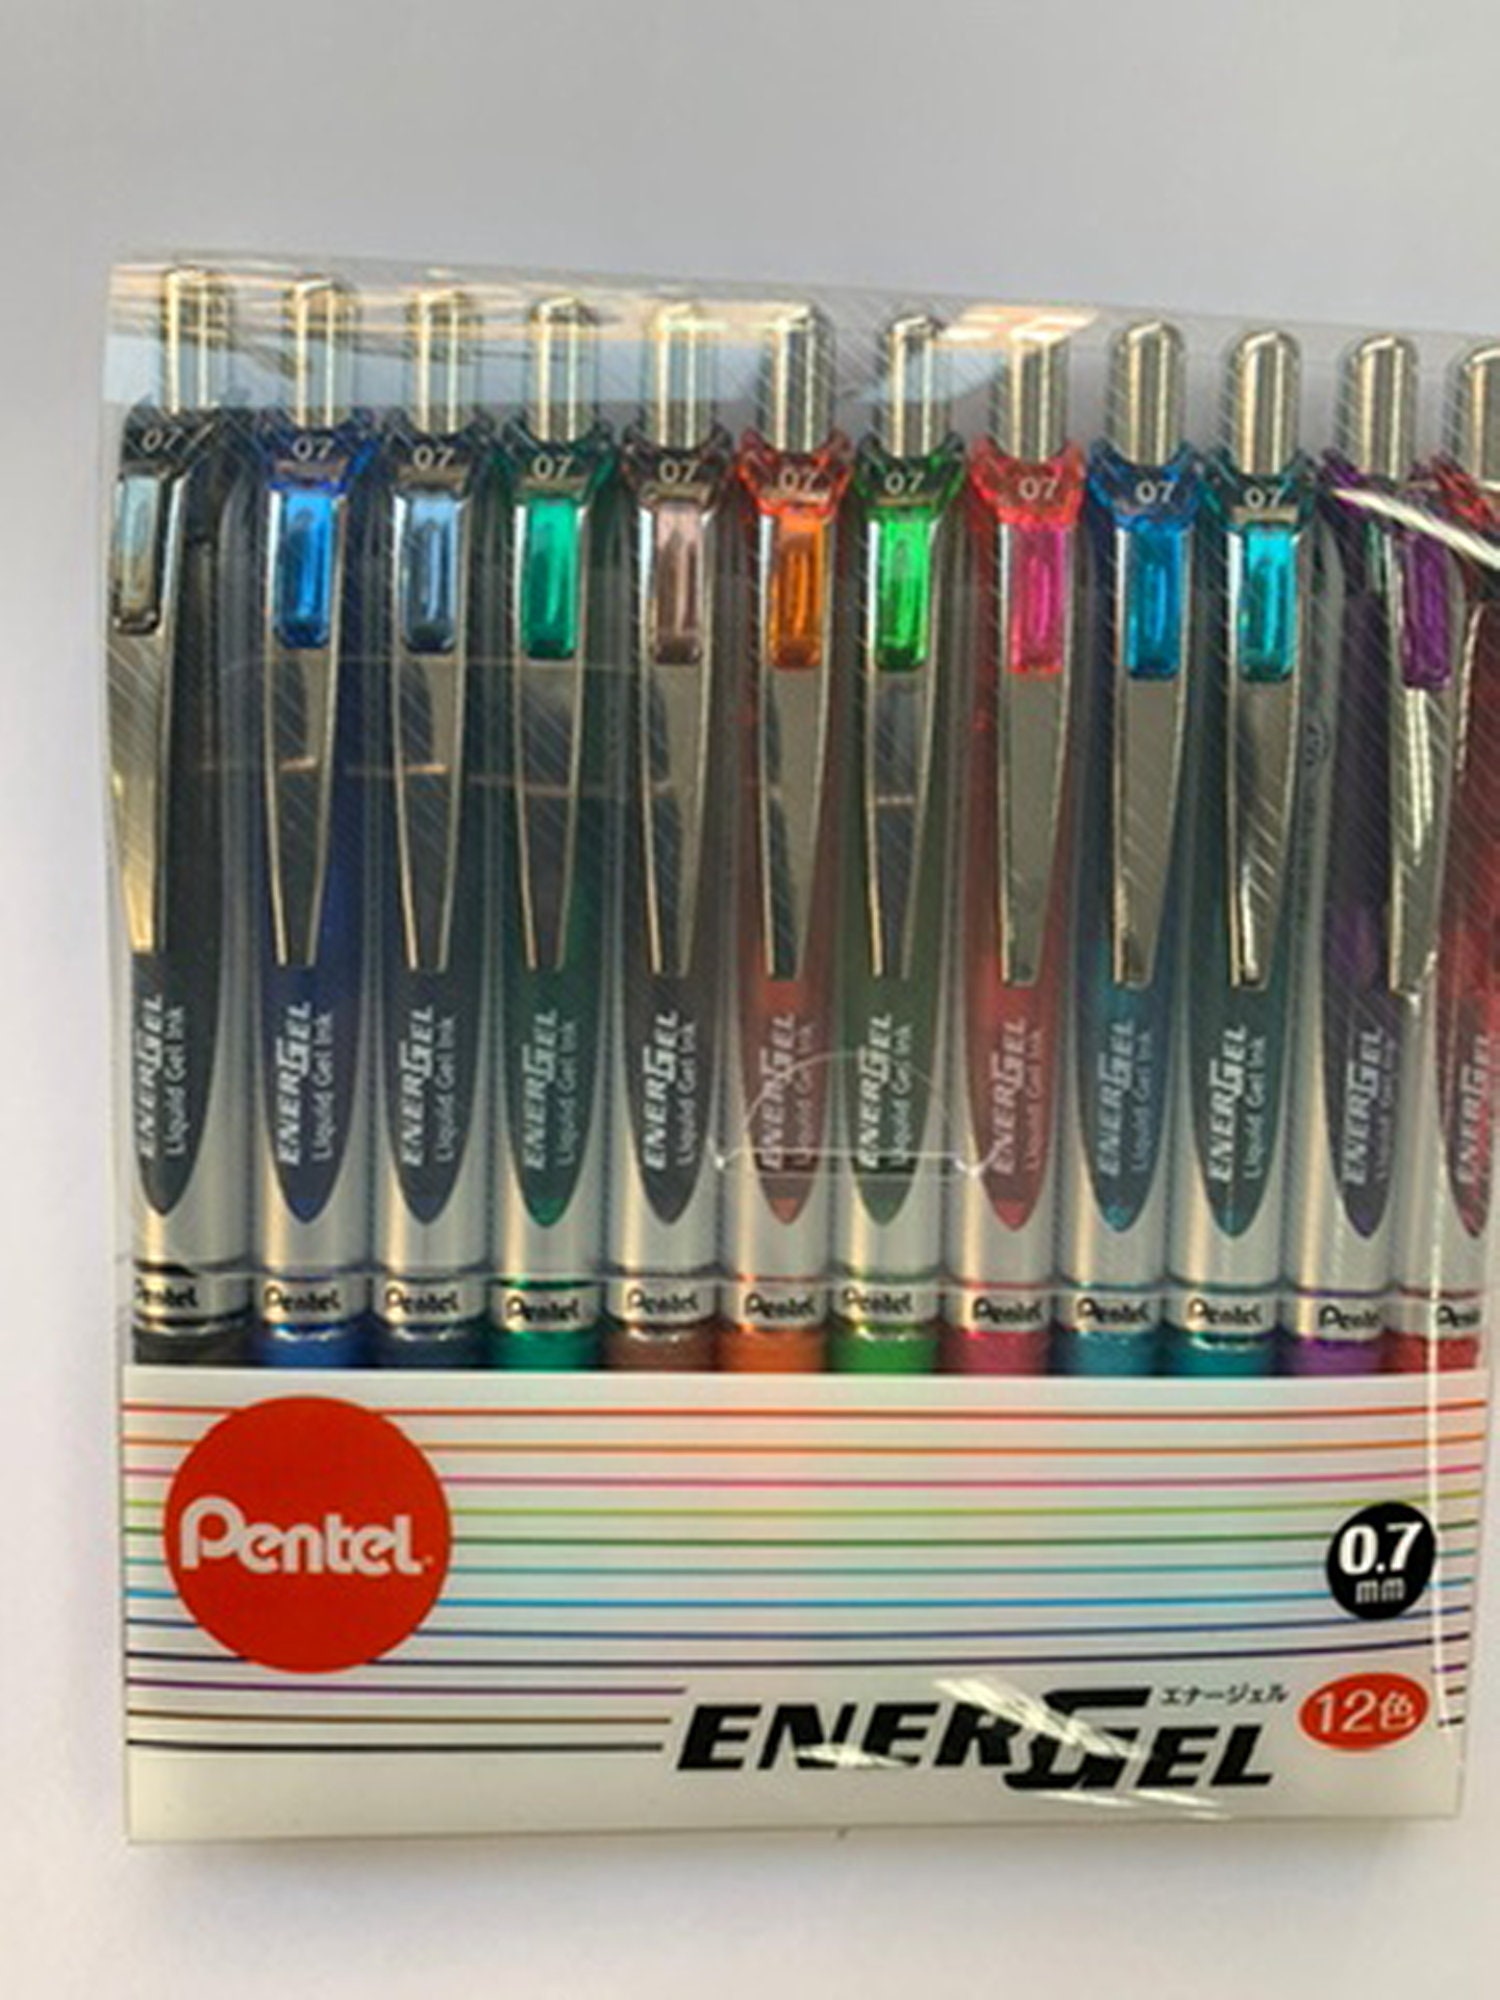 12 Colors Set Pentel Energel Pen 0.7mm 12 Pcs Gel Pens. 